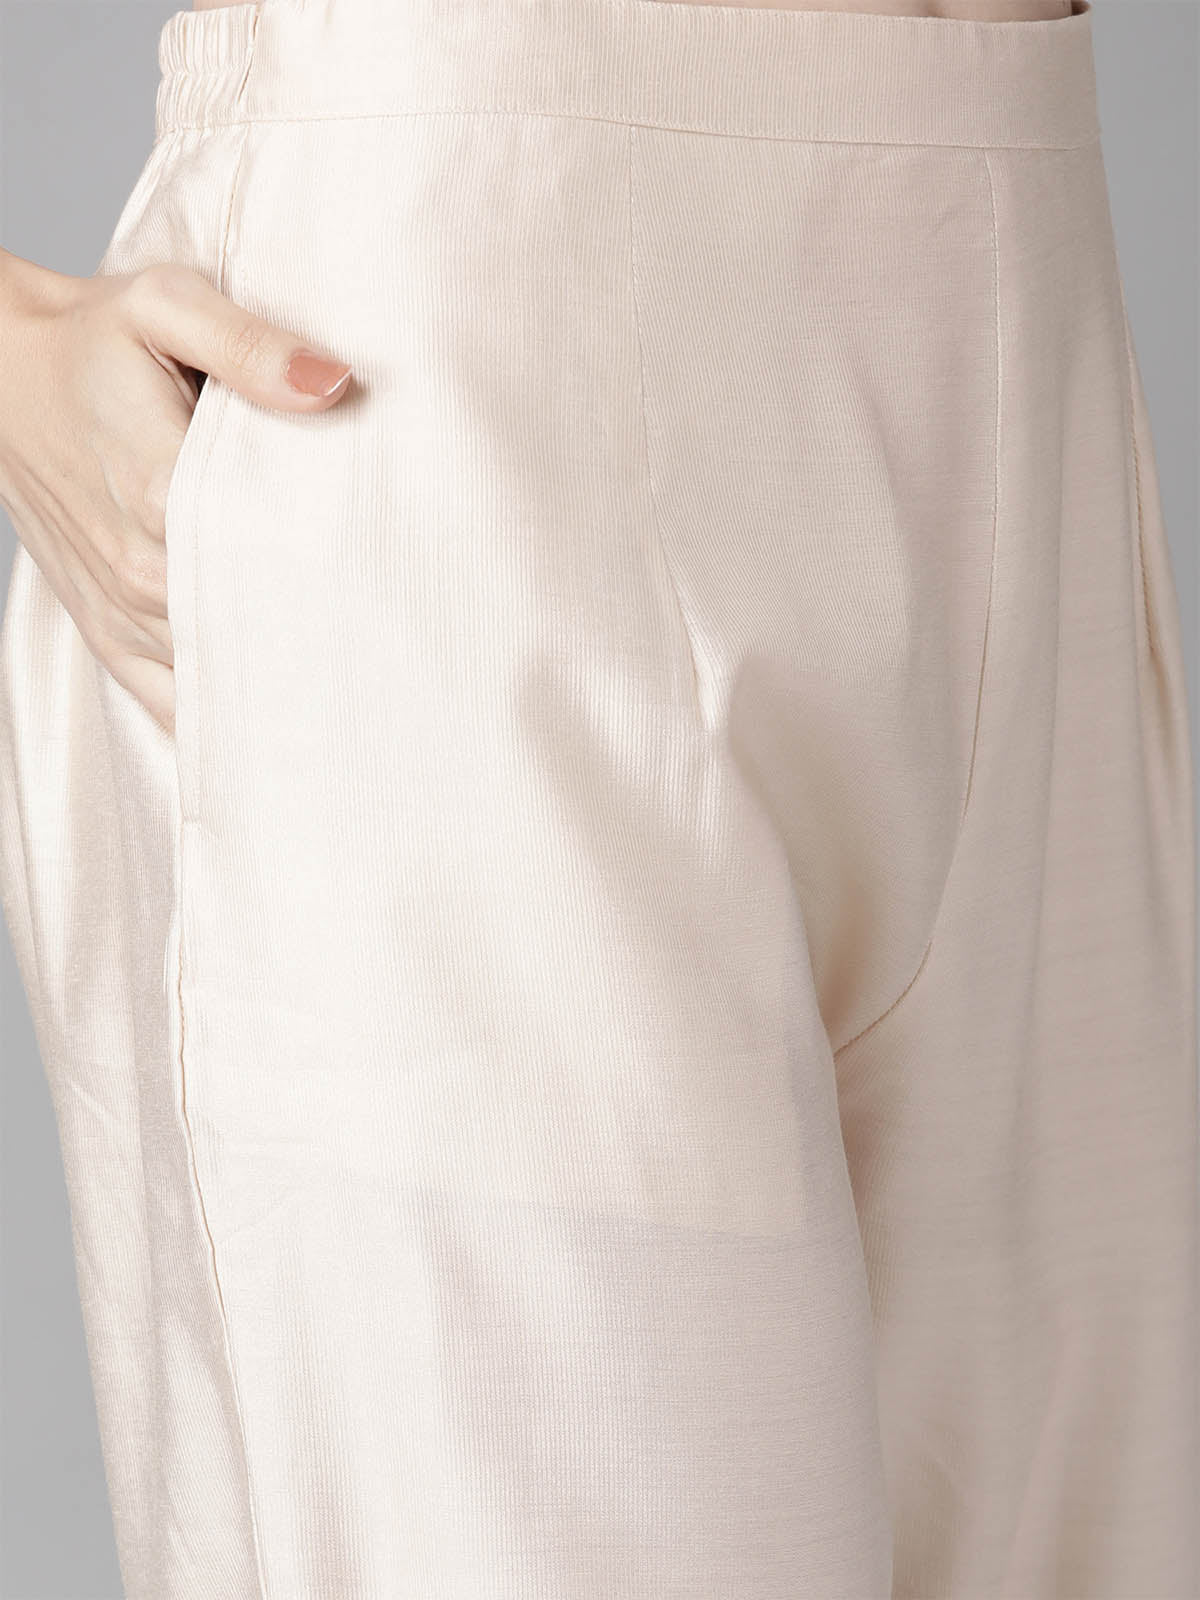 Women's White Embroidered Kurta Trouser Dupatta Set - Odette